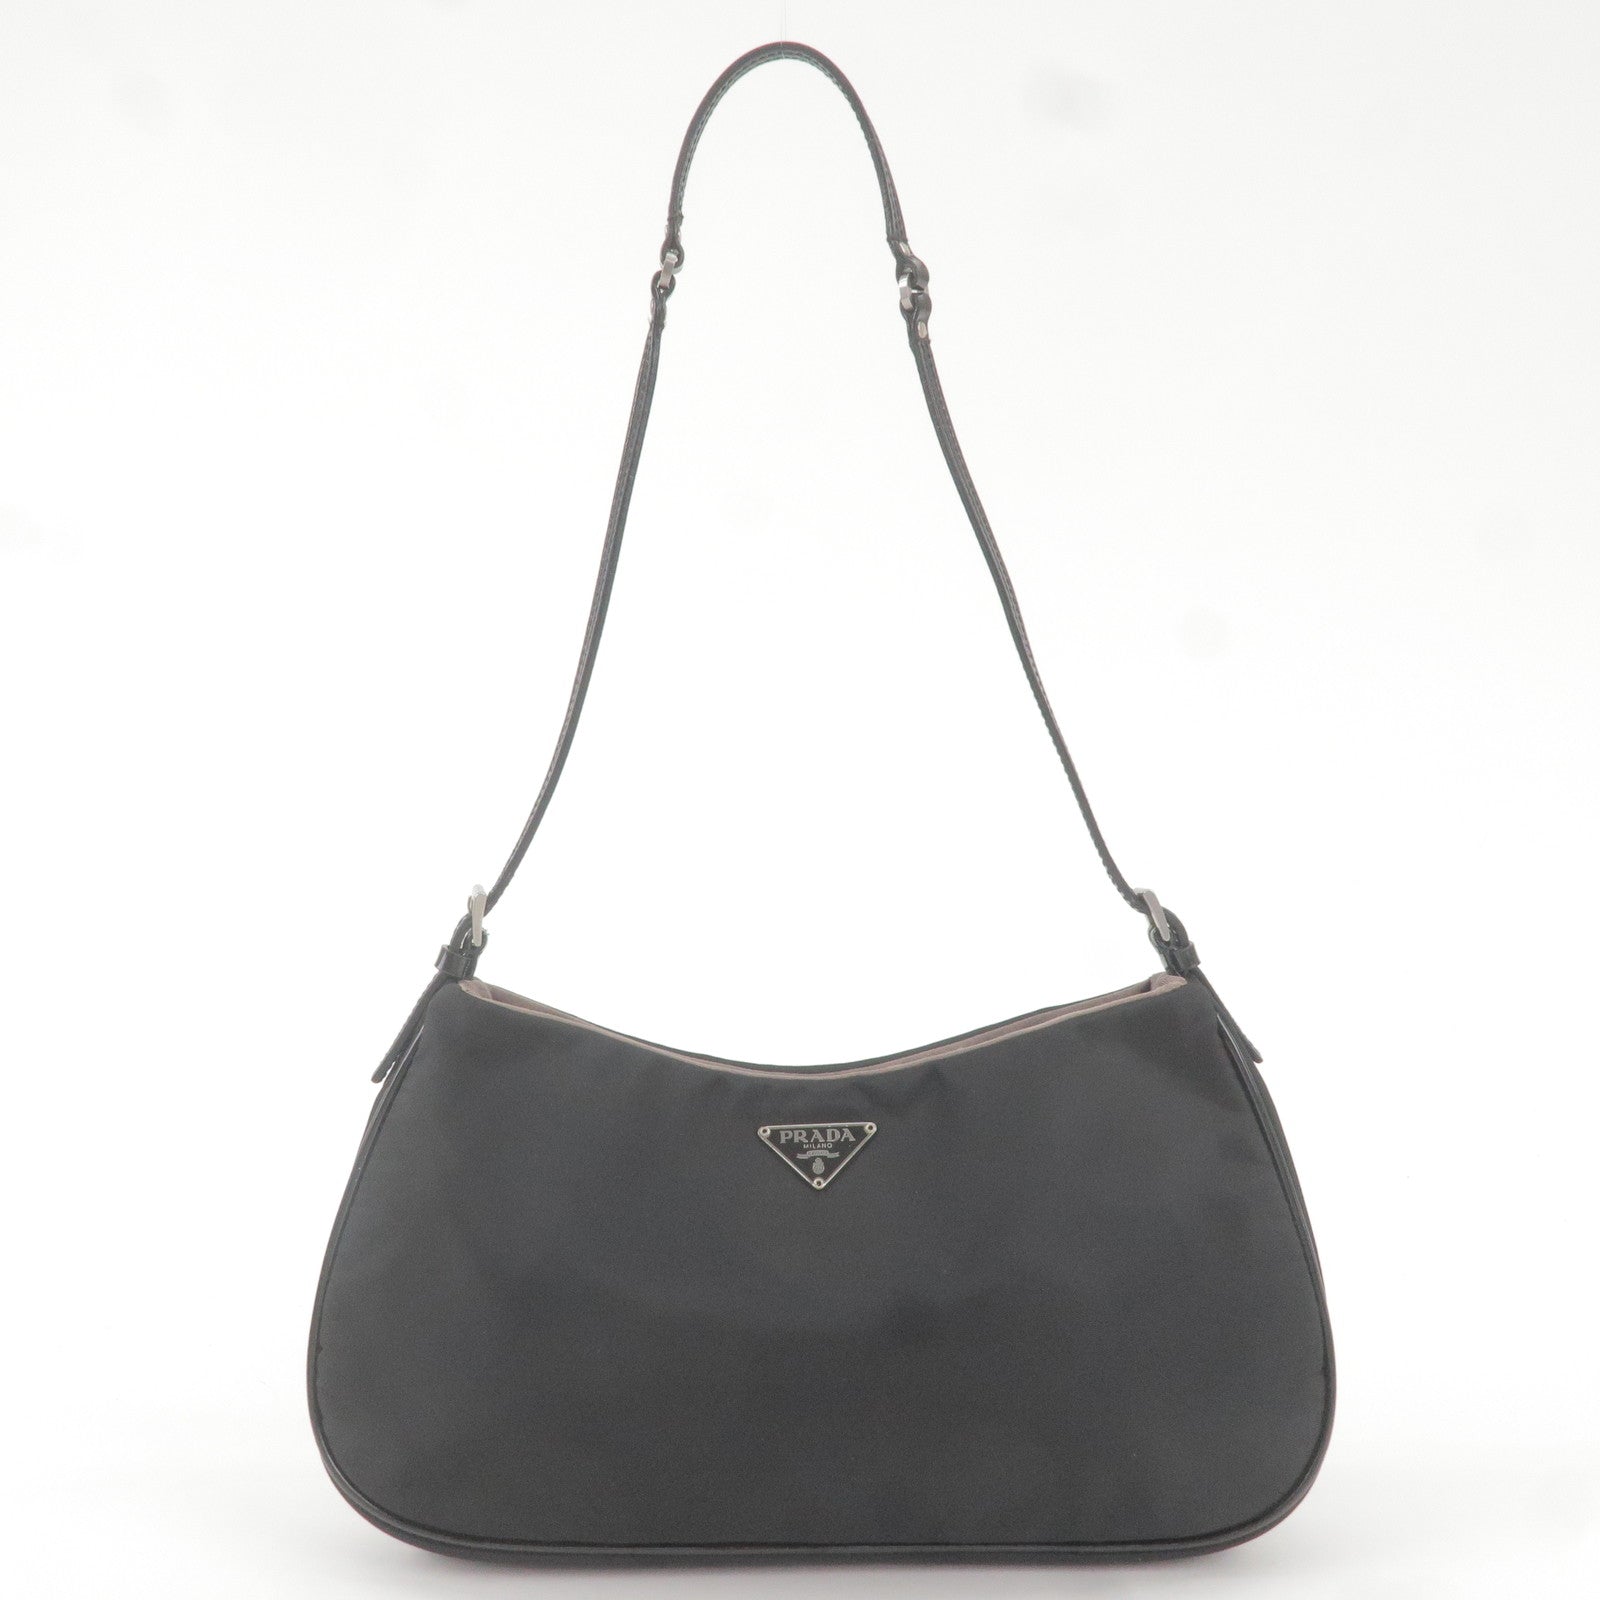 Prada Rubber Shoulder Bags for Women | Mercari